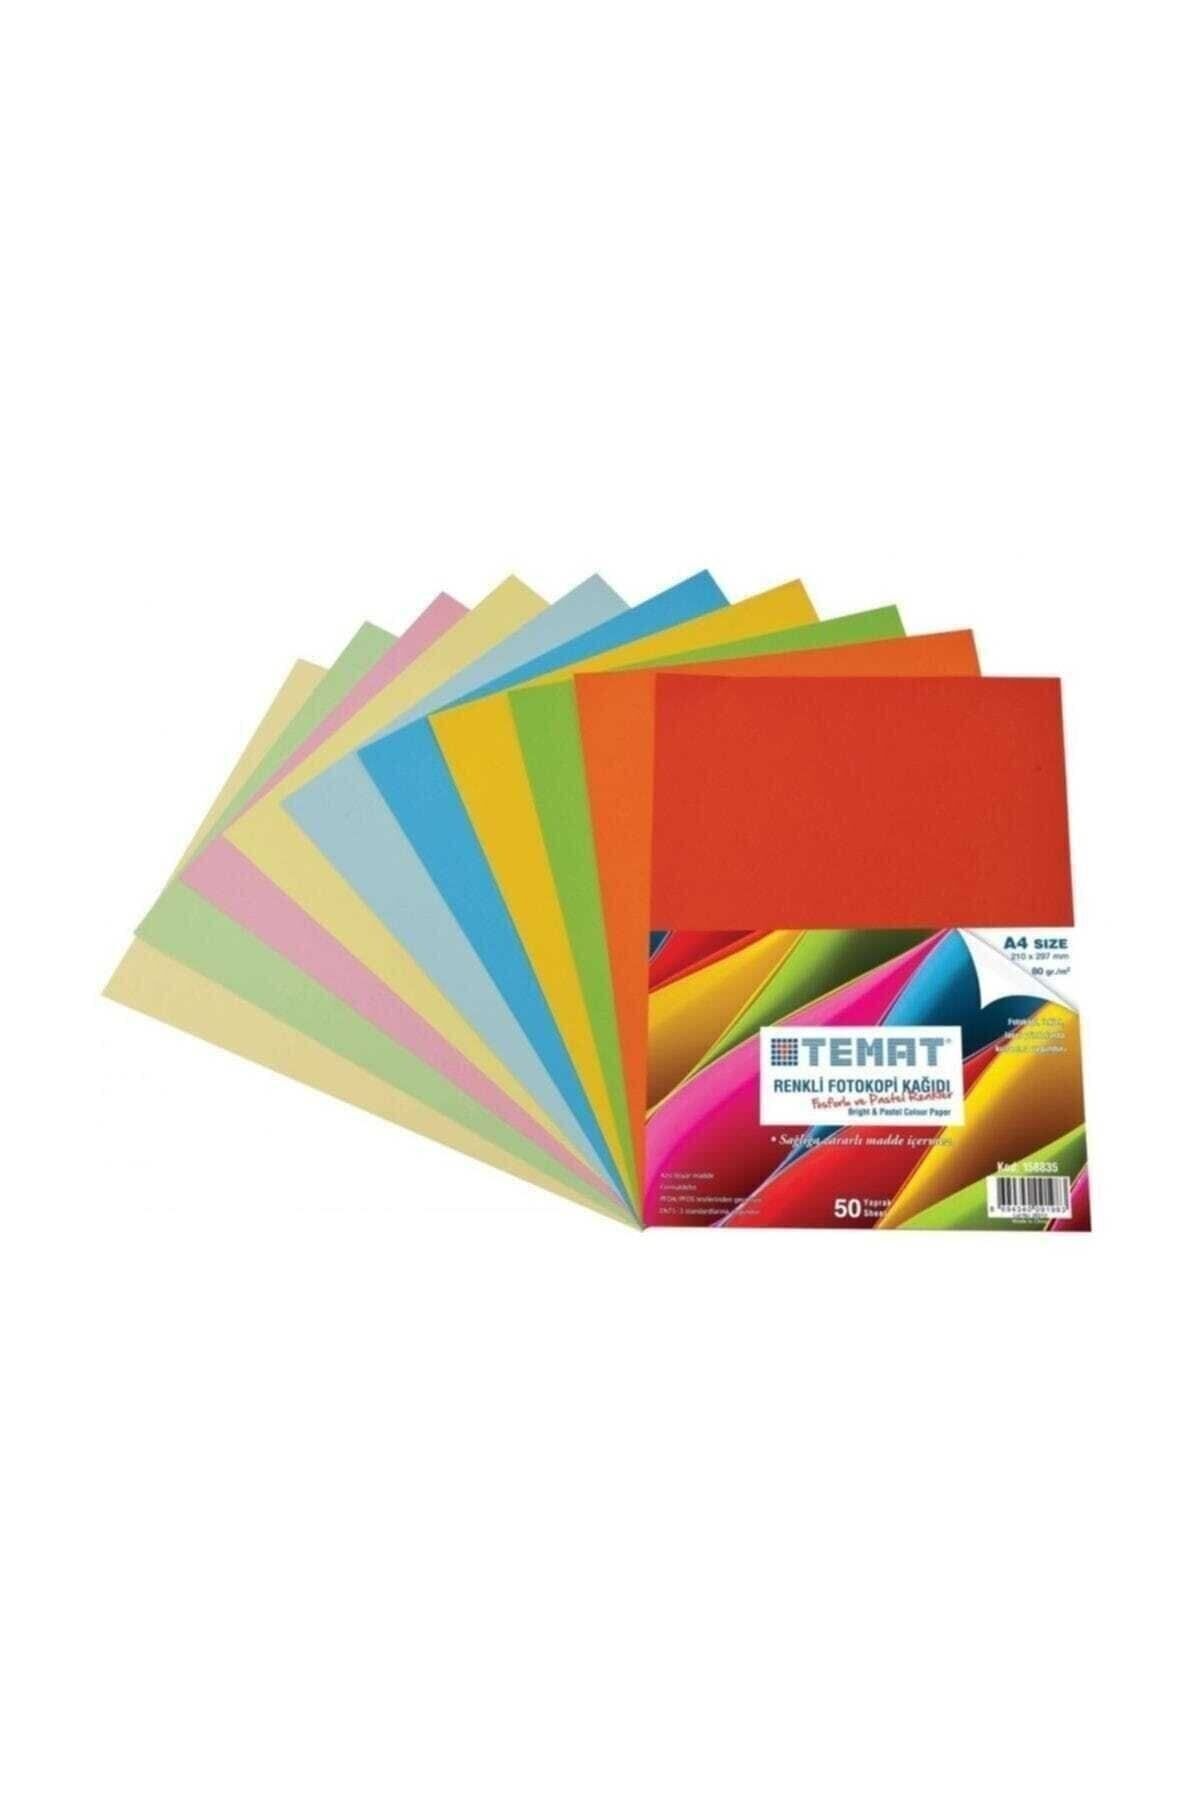 Temat 50 Sayfa Renkli Fotokopi Kağıdı Fosforlu Ve Pastel Renkler